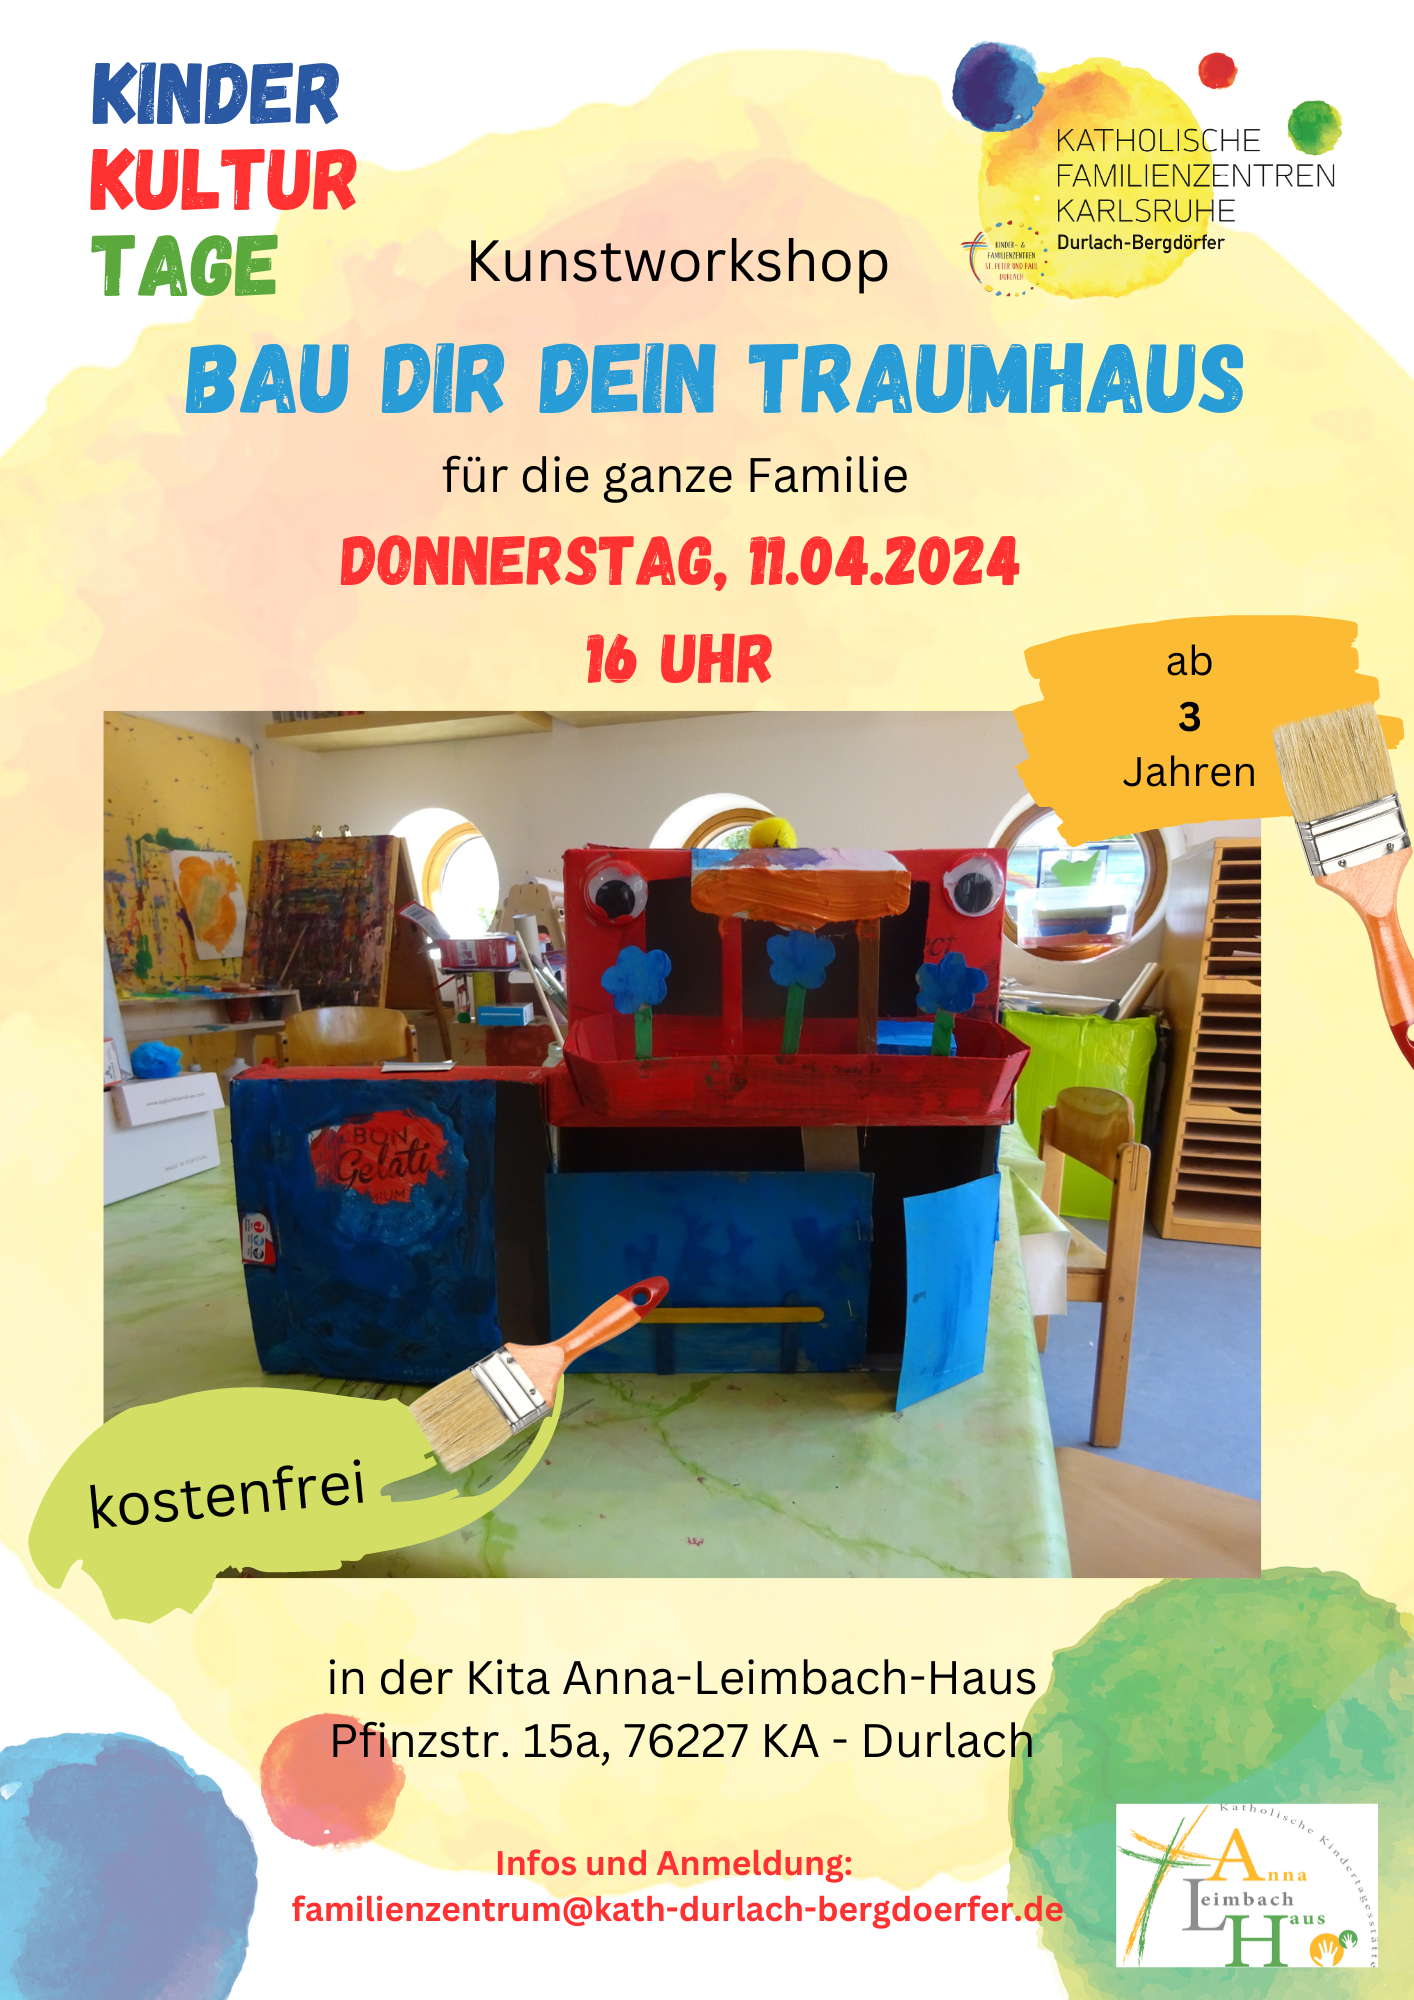 KinderKulturTage der Kath. Familienzentren | KA-Durlach